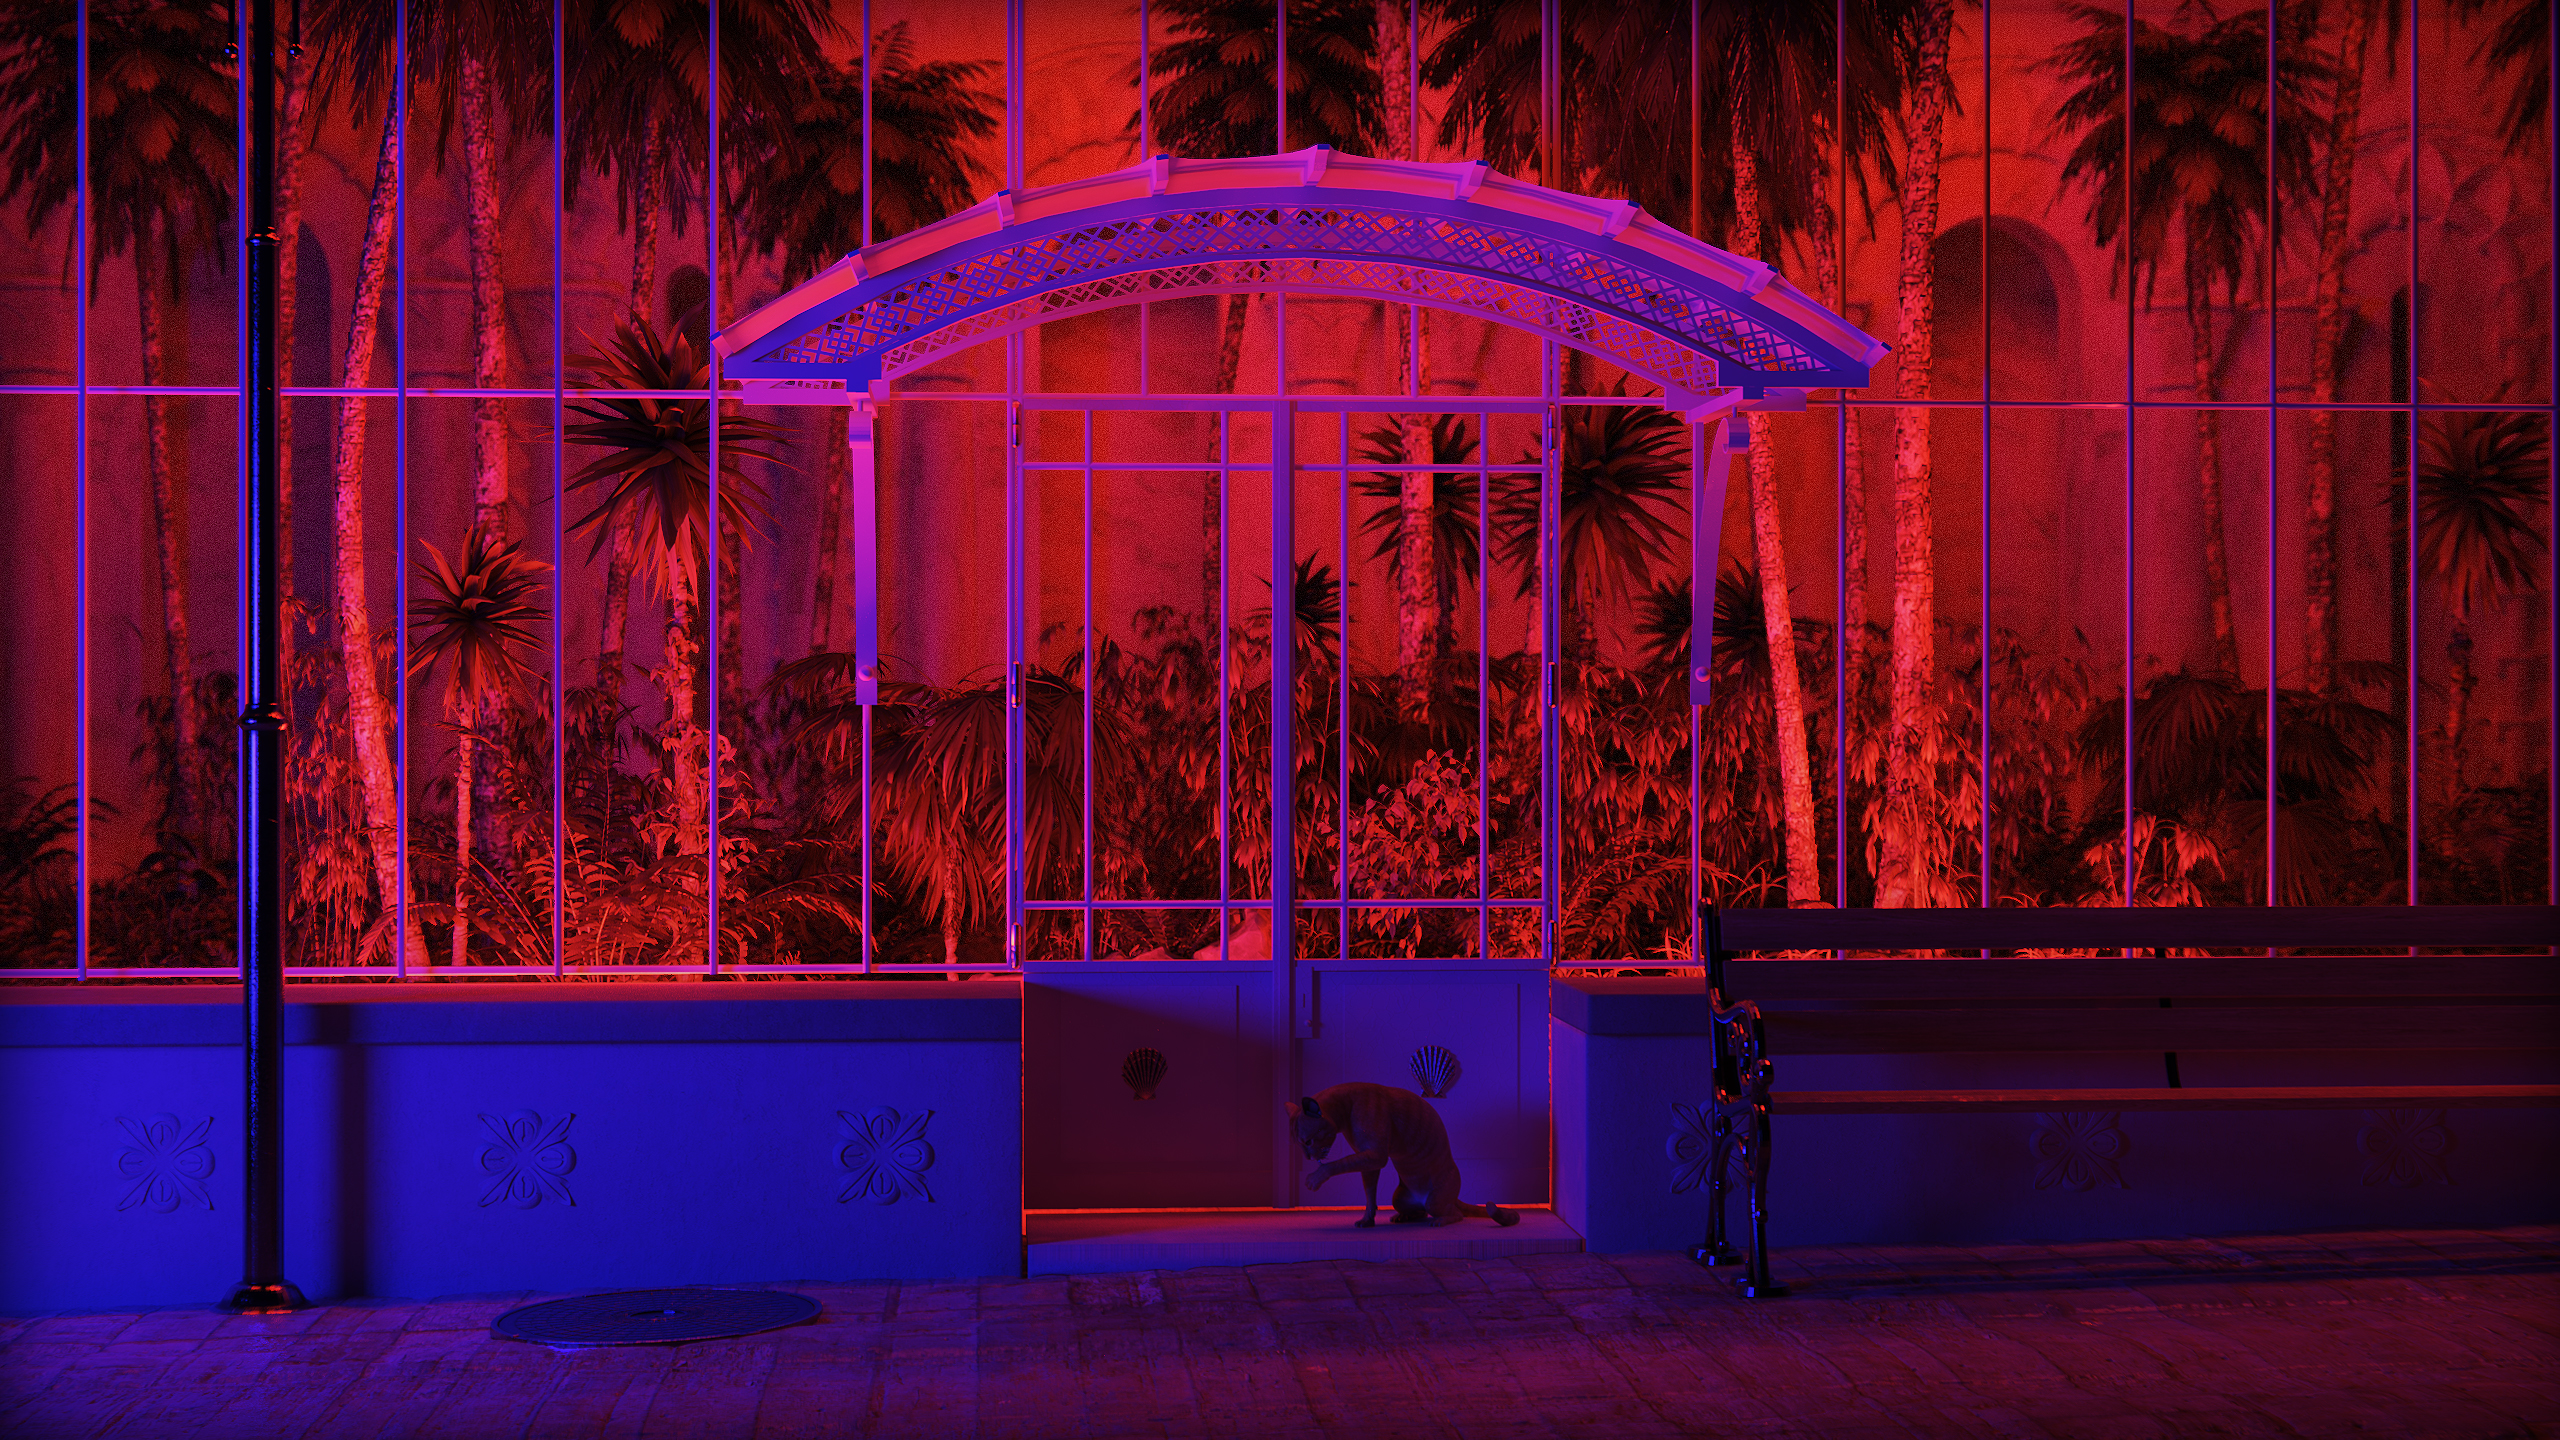 3D Graphics 3d Design CGi Digital Art Architecture Park Bench Neon Neon Lights Plants Palm Trees Yuc 2560x1440